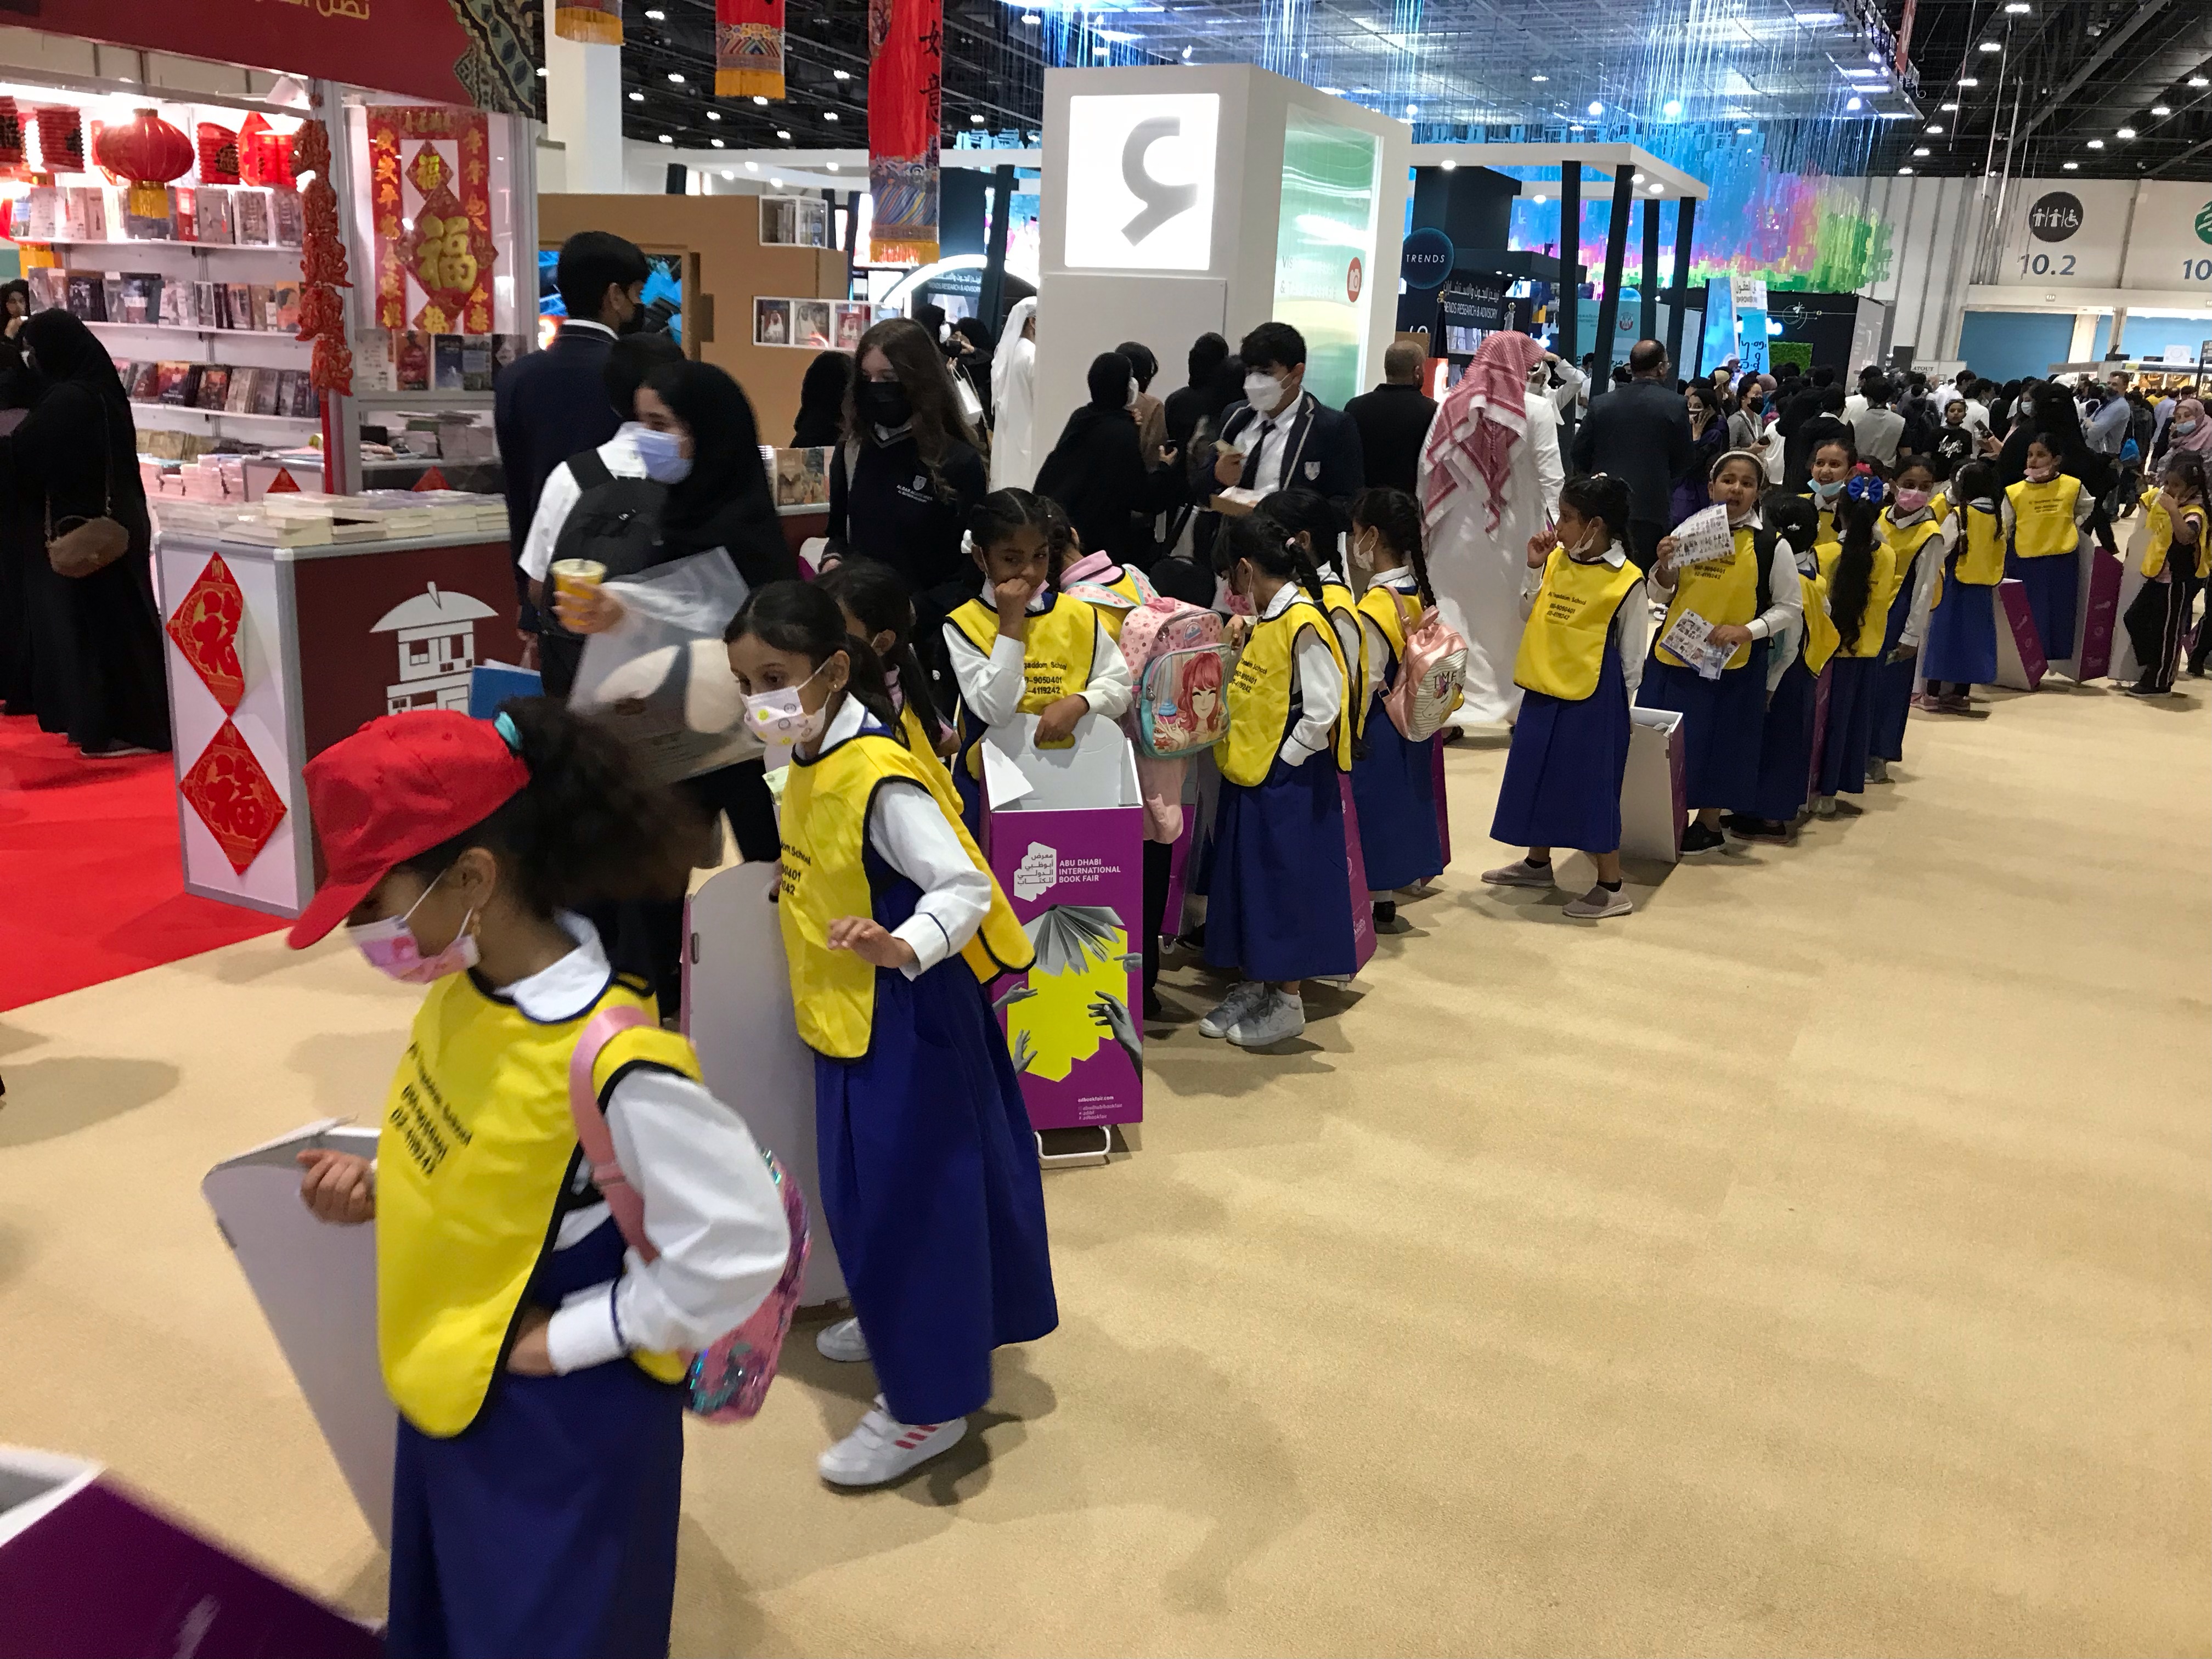 A school class at the book fair in Abu Dhabi 2022 (photo: Stefan Weidner)